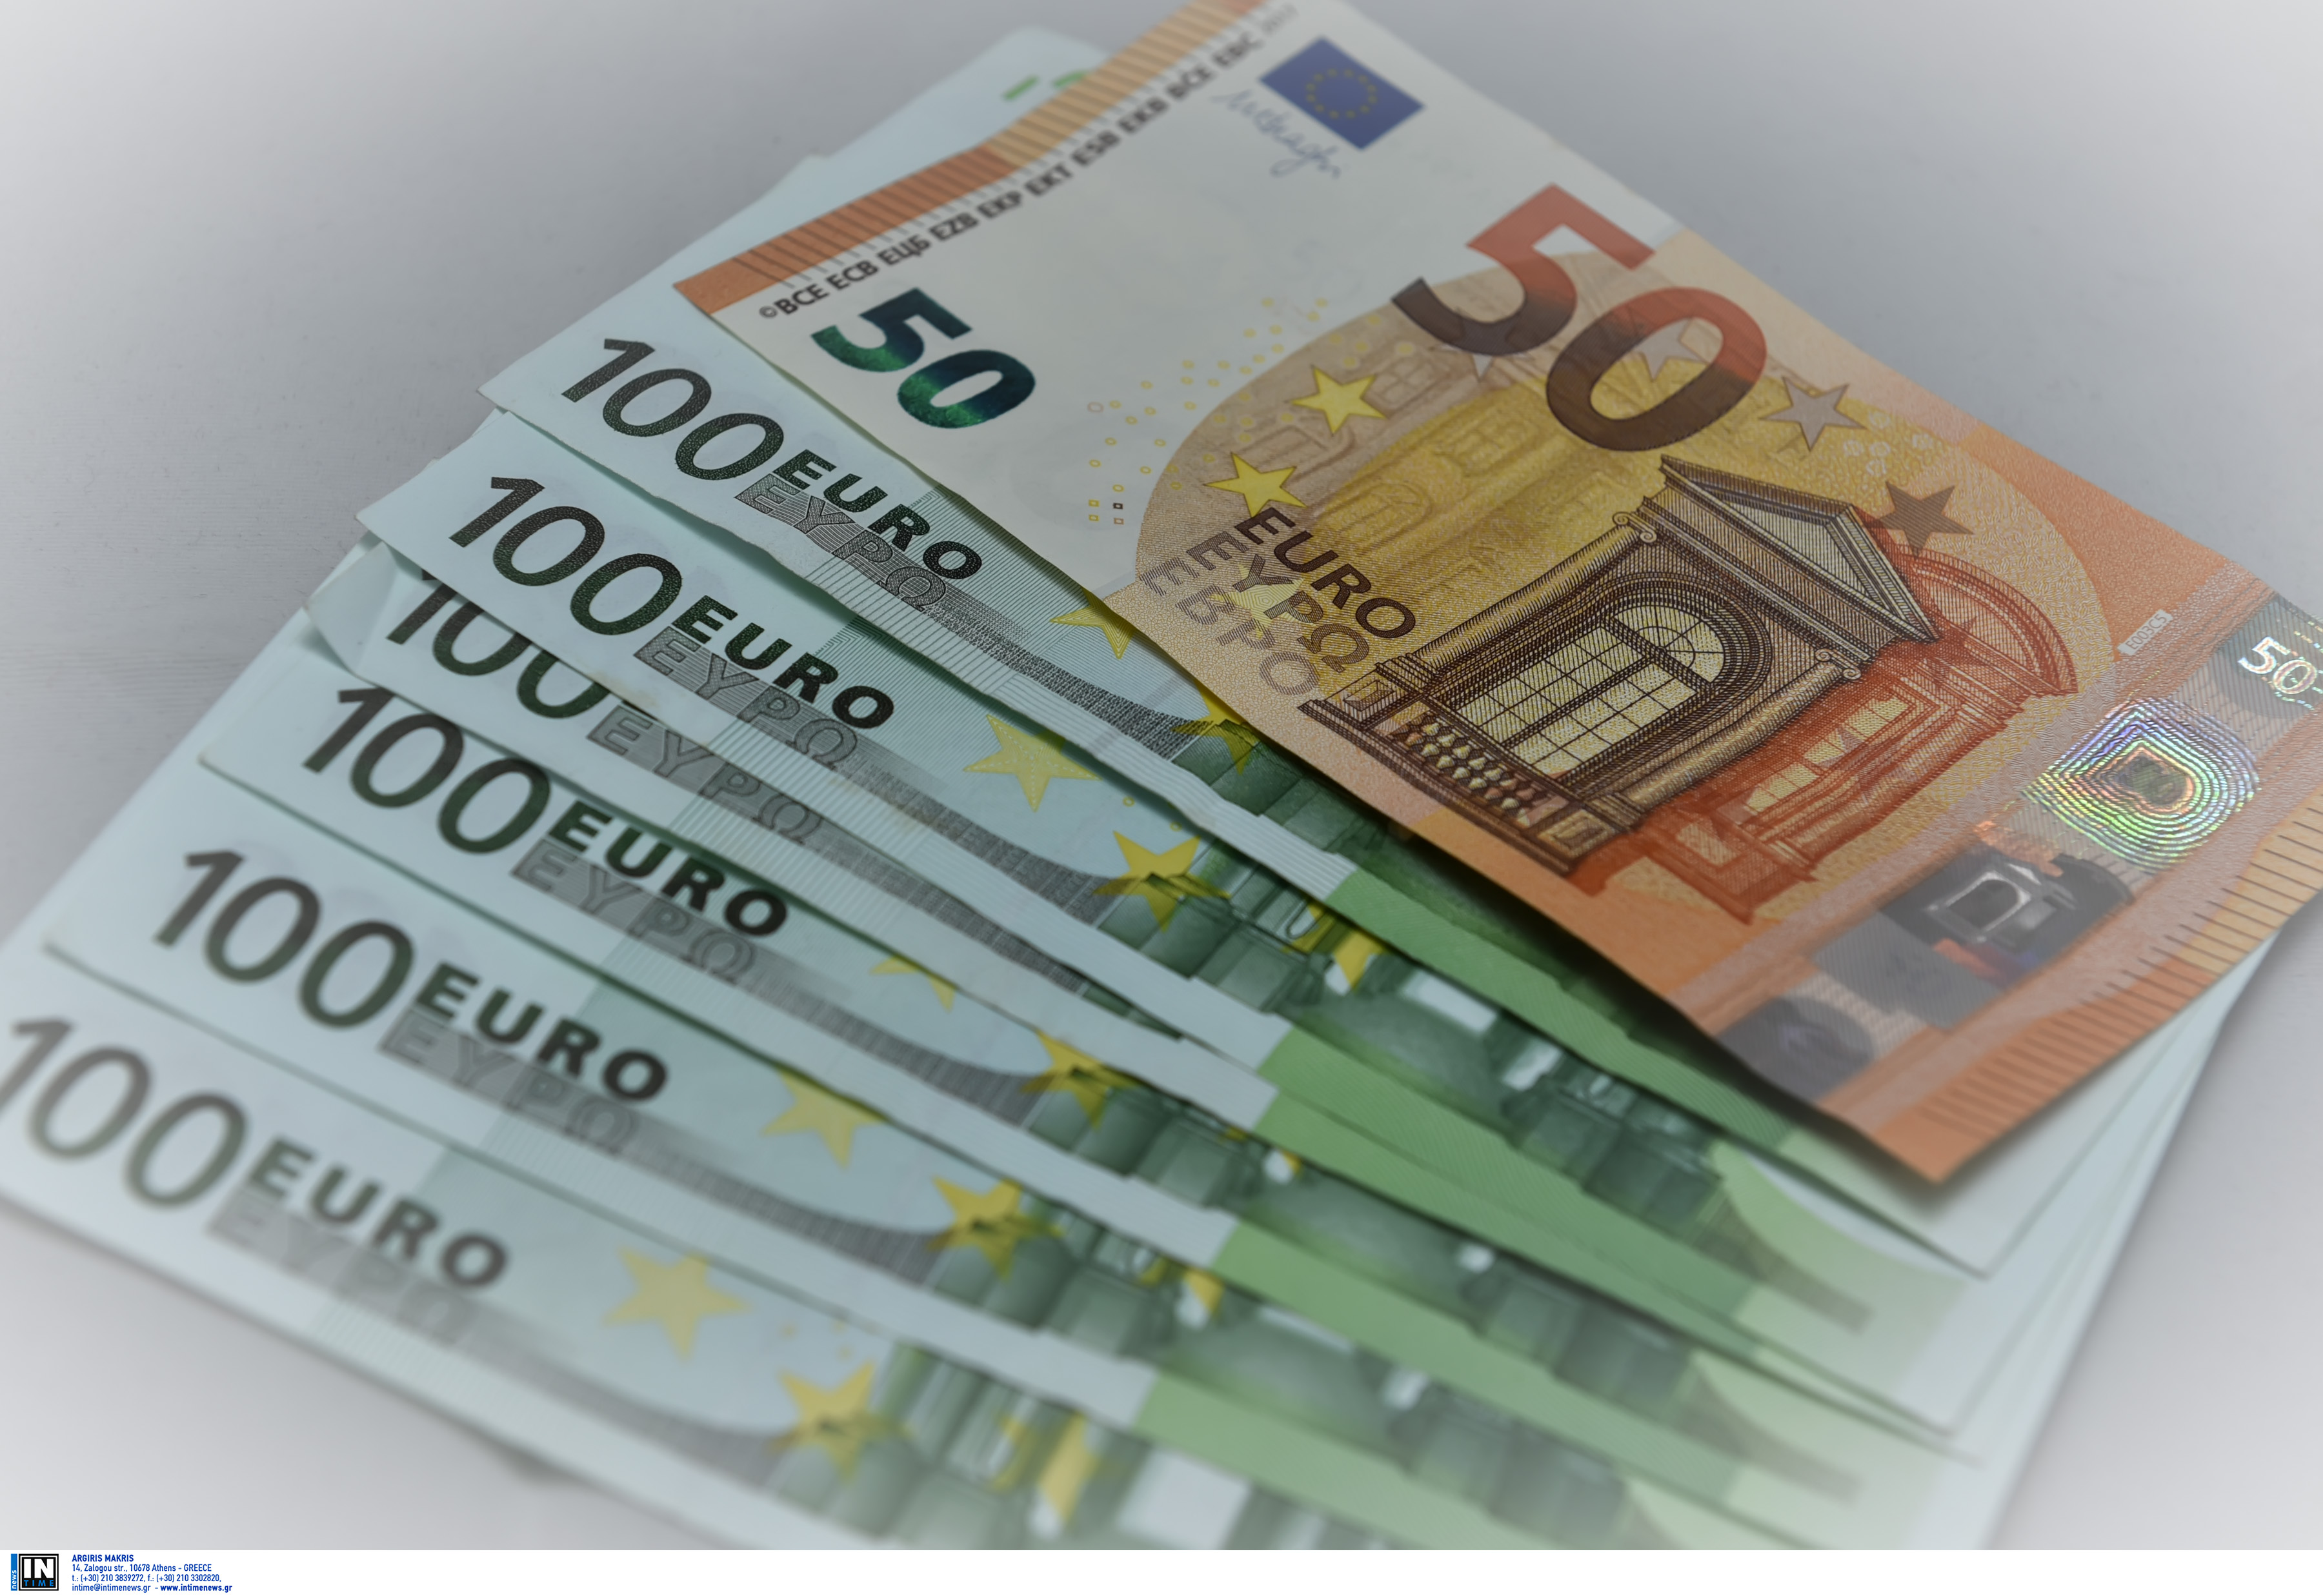 Ηλεία: Σαν να μην έφτανε η κλοπή των 1.200 ευρώ δέχτηκε ένα τηλεφώνημα που τον έκανε έξω φρενών